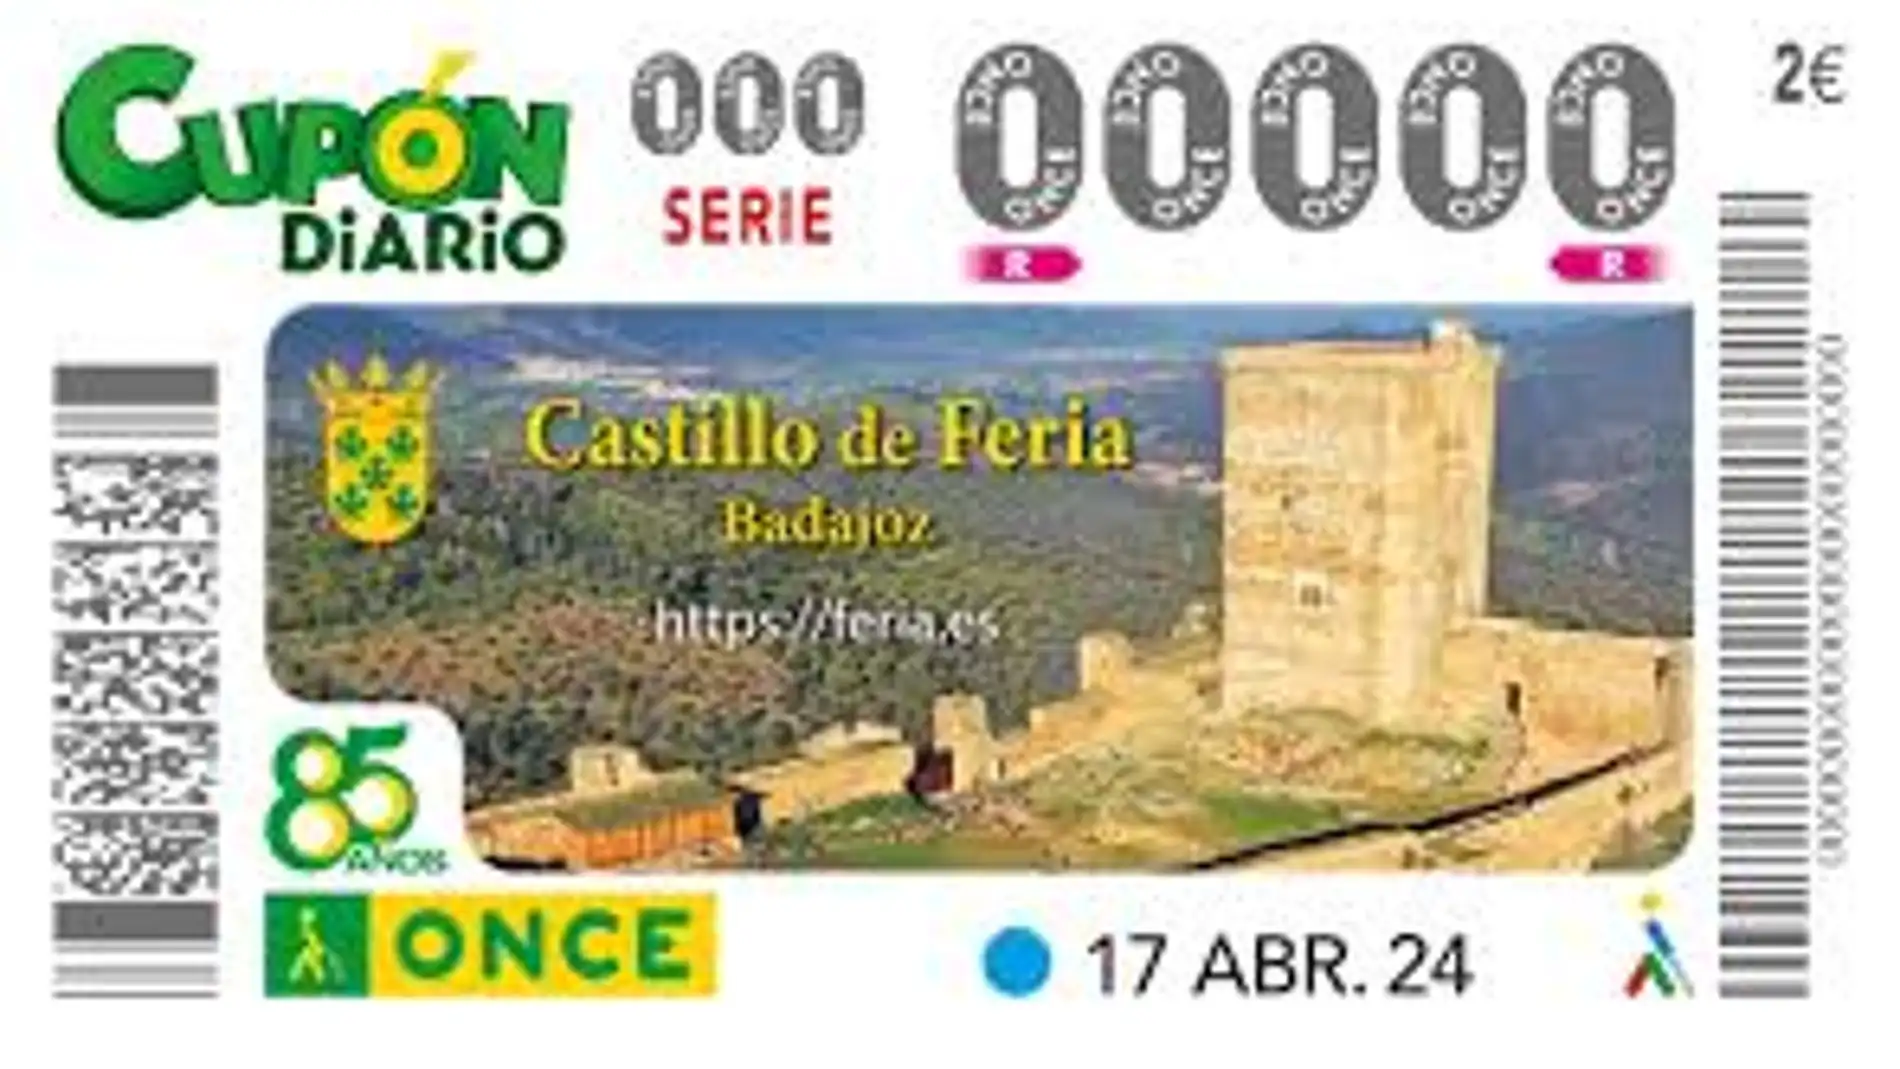 El Castillo de Feria protagonista del cupón de la ONCE del próximo 17 de abril